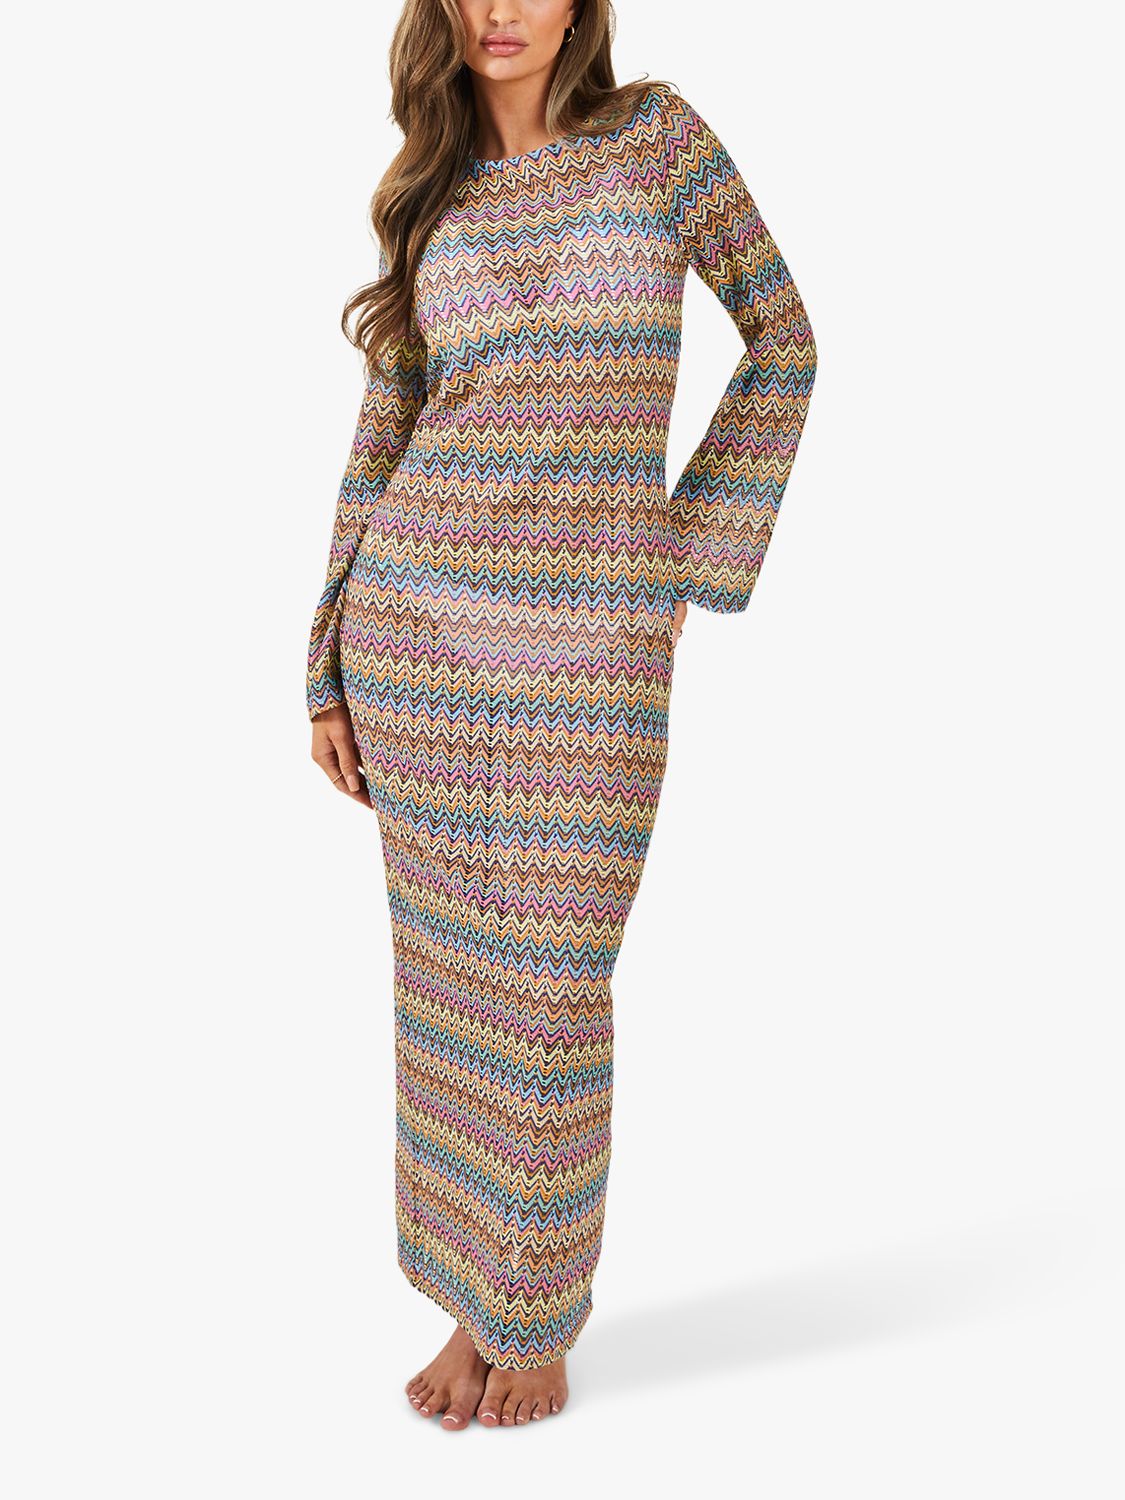 Accessorize Zig Zag Crochet Maxi Dress, Multi, S